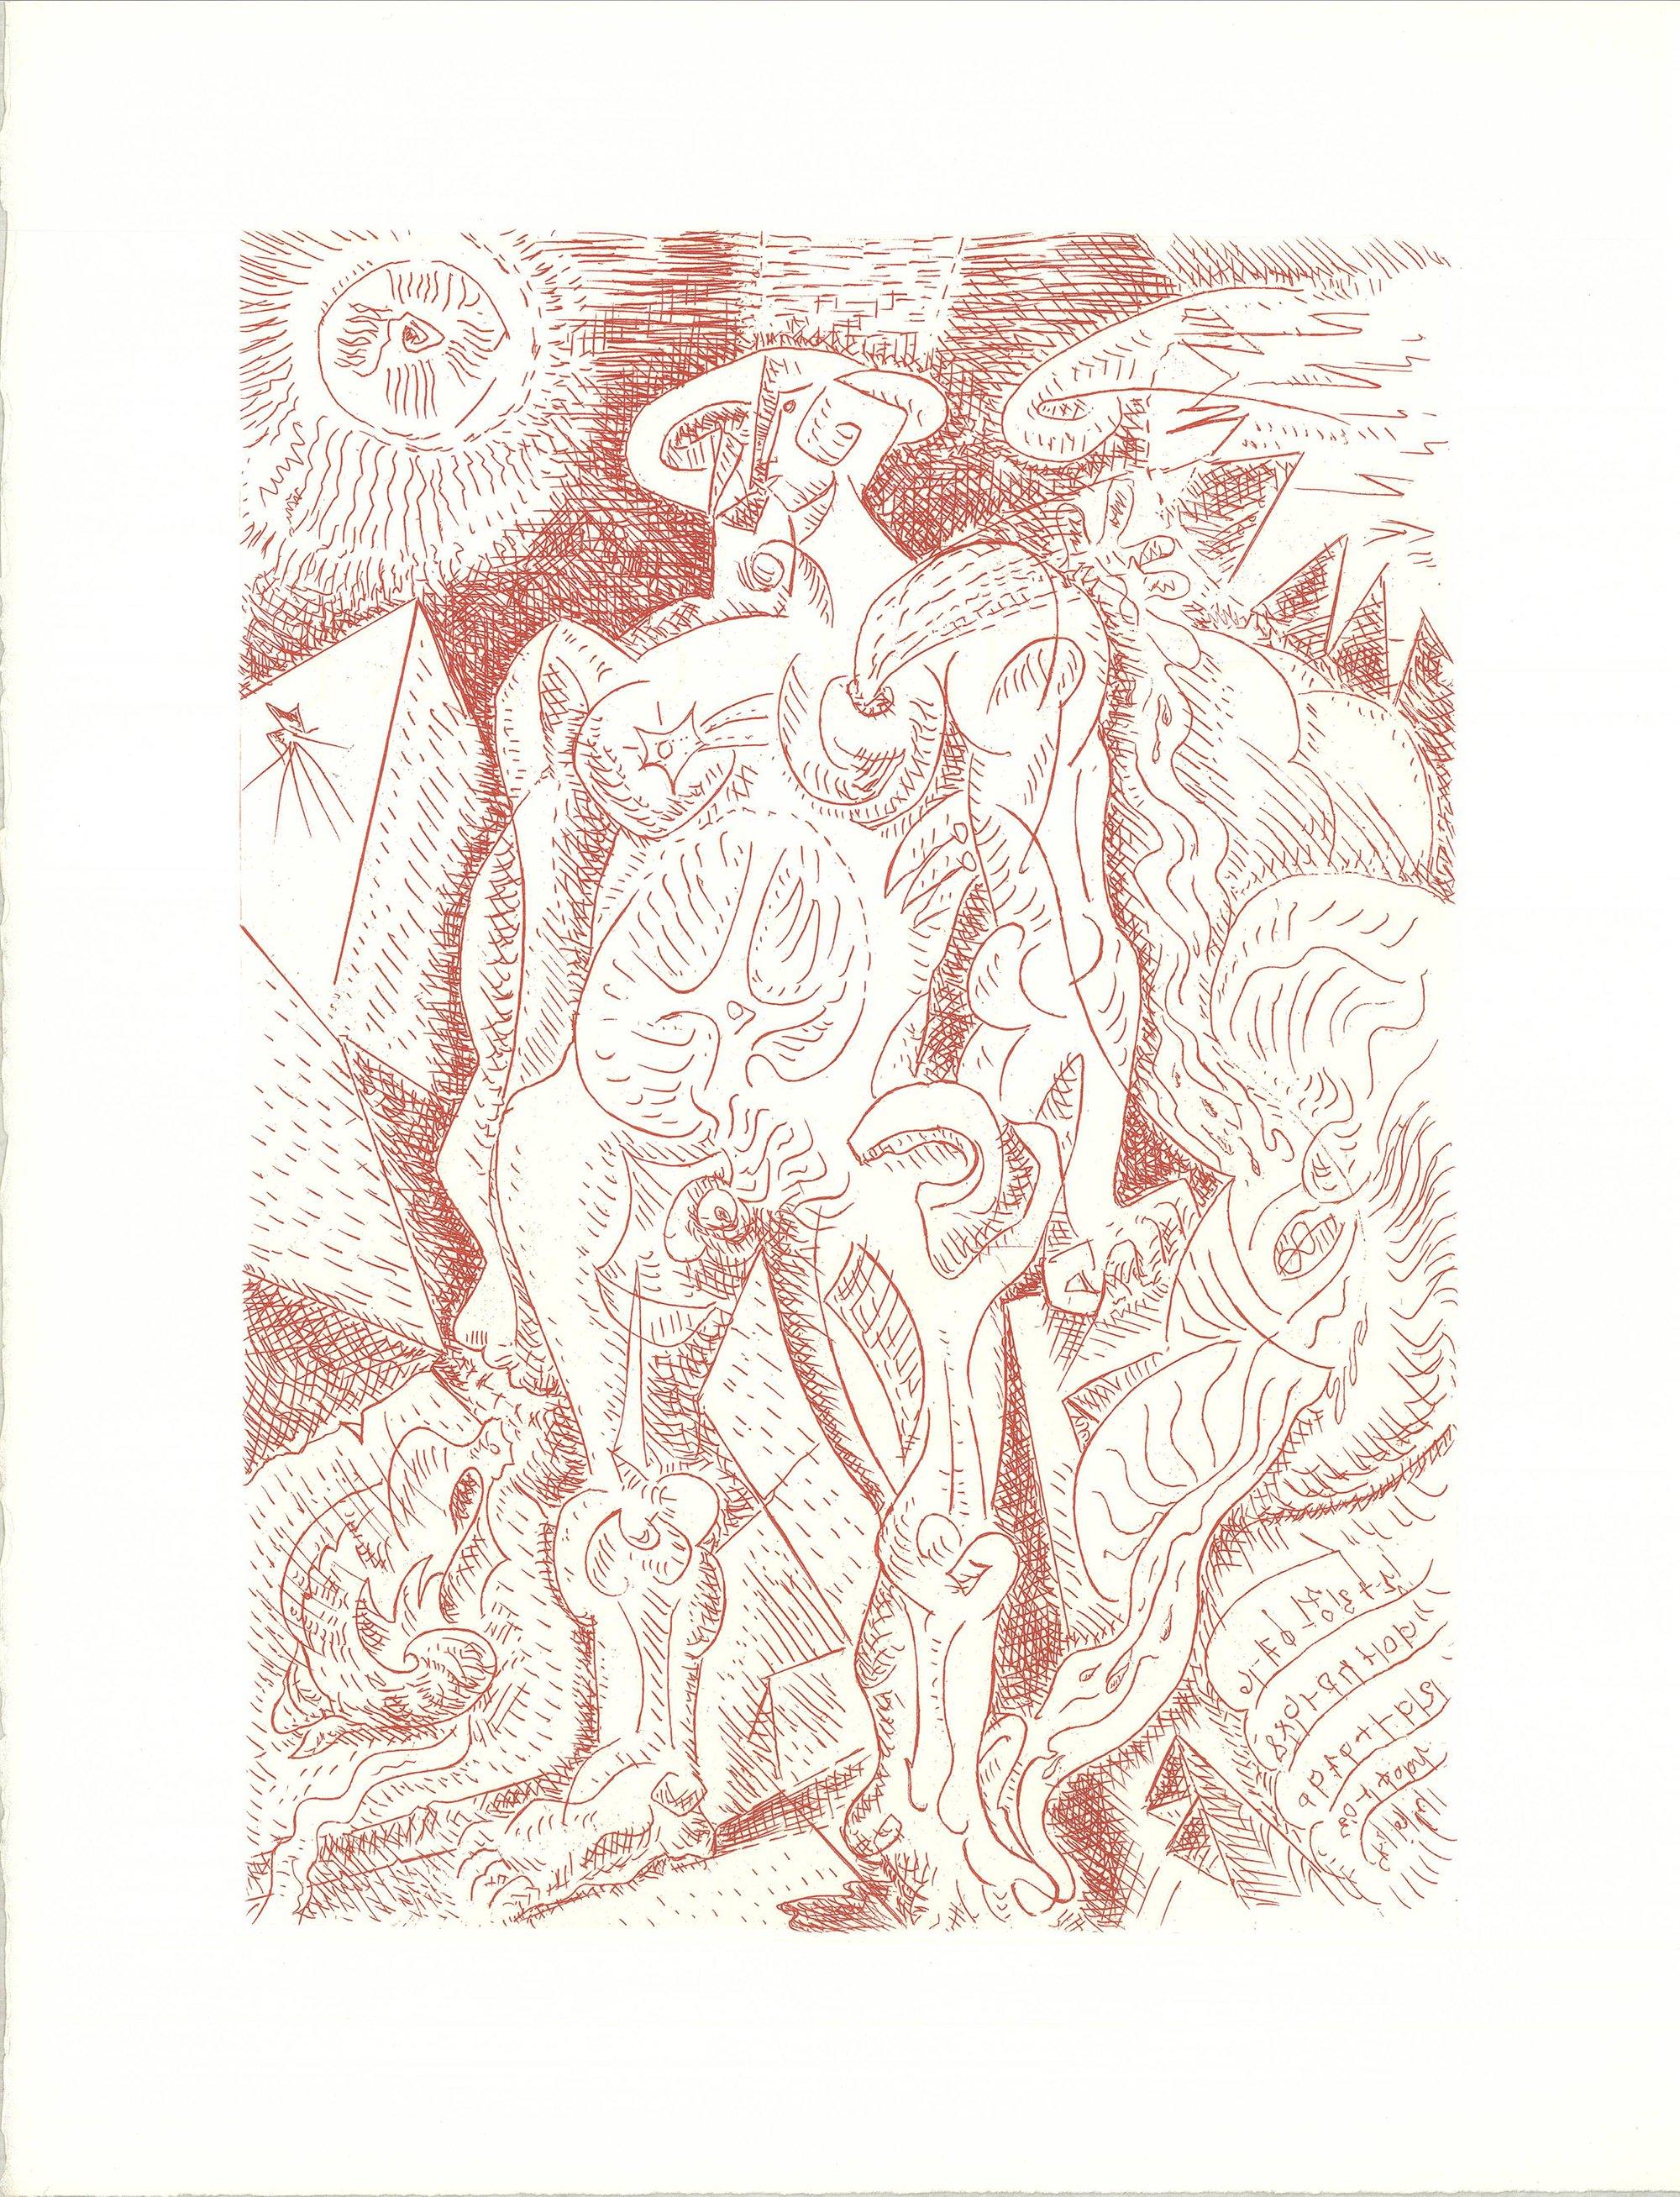 1974 Andre Masson 'Le Septieme Chant' Kubistische Radierung in Weiß und Rot, Frankreich, 1974 – Print von André Masson